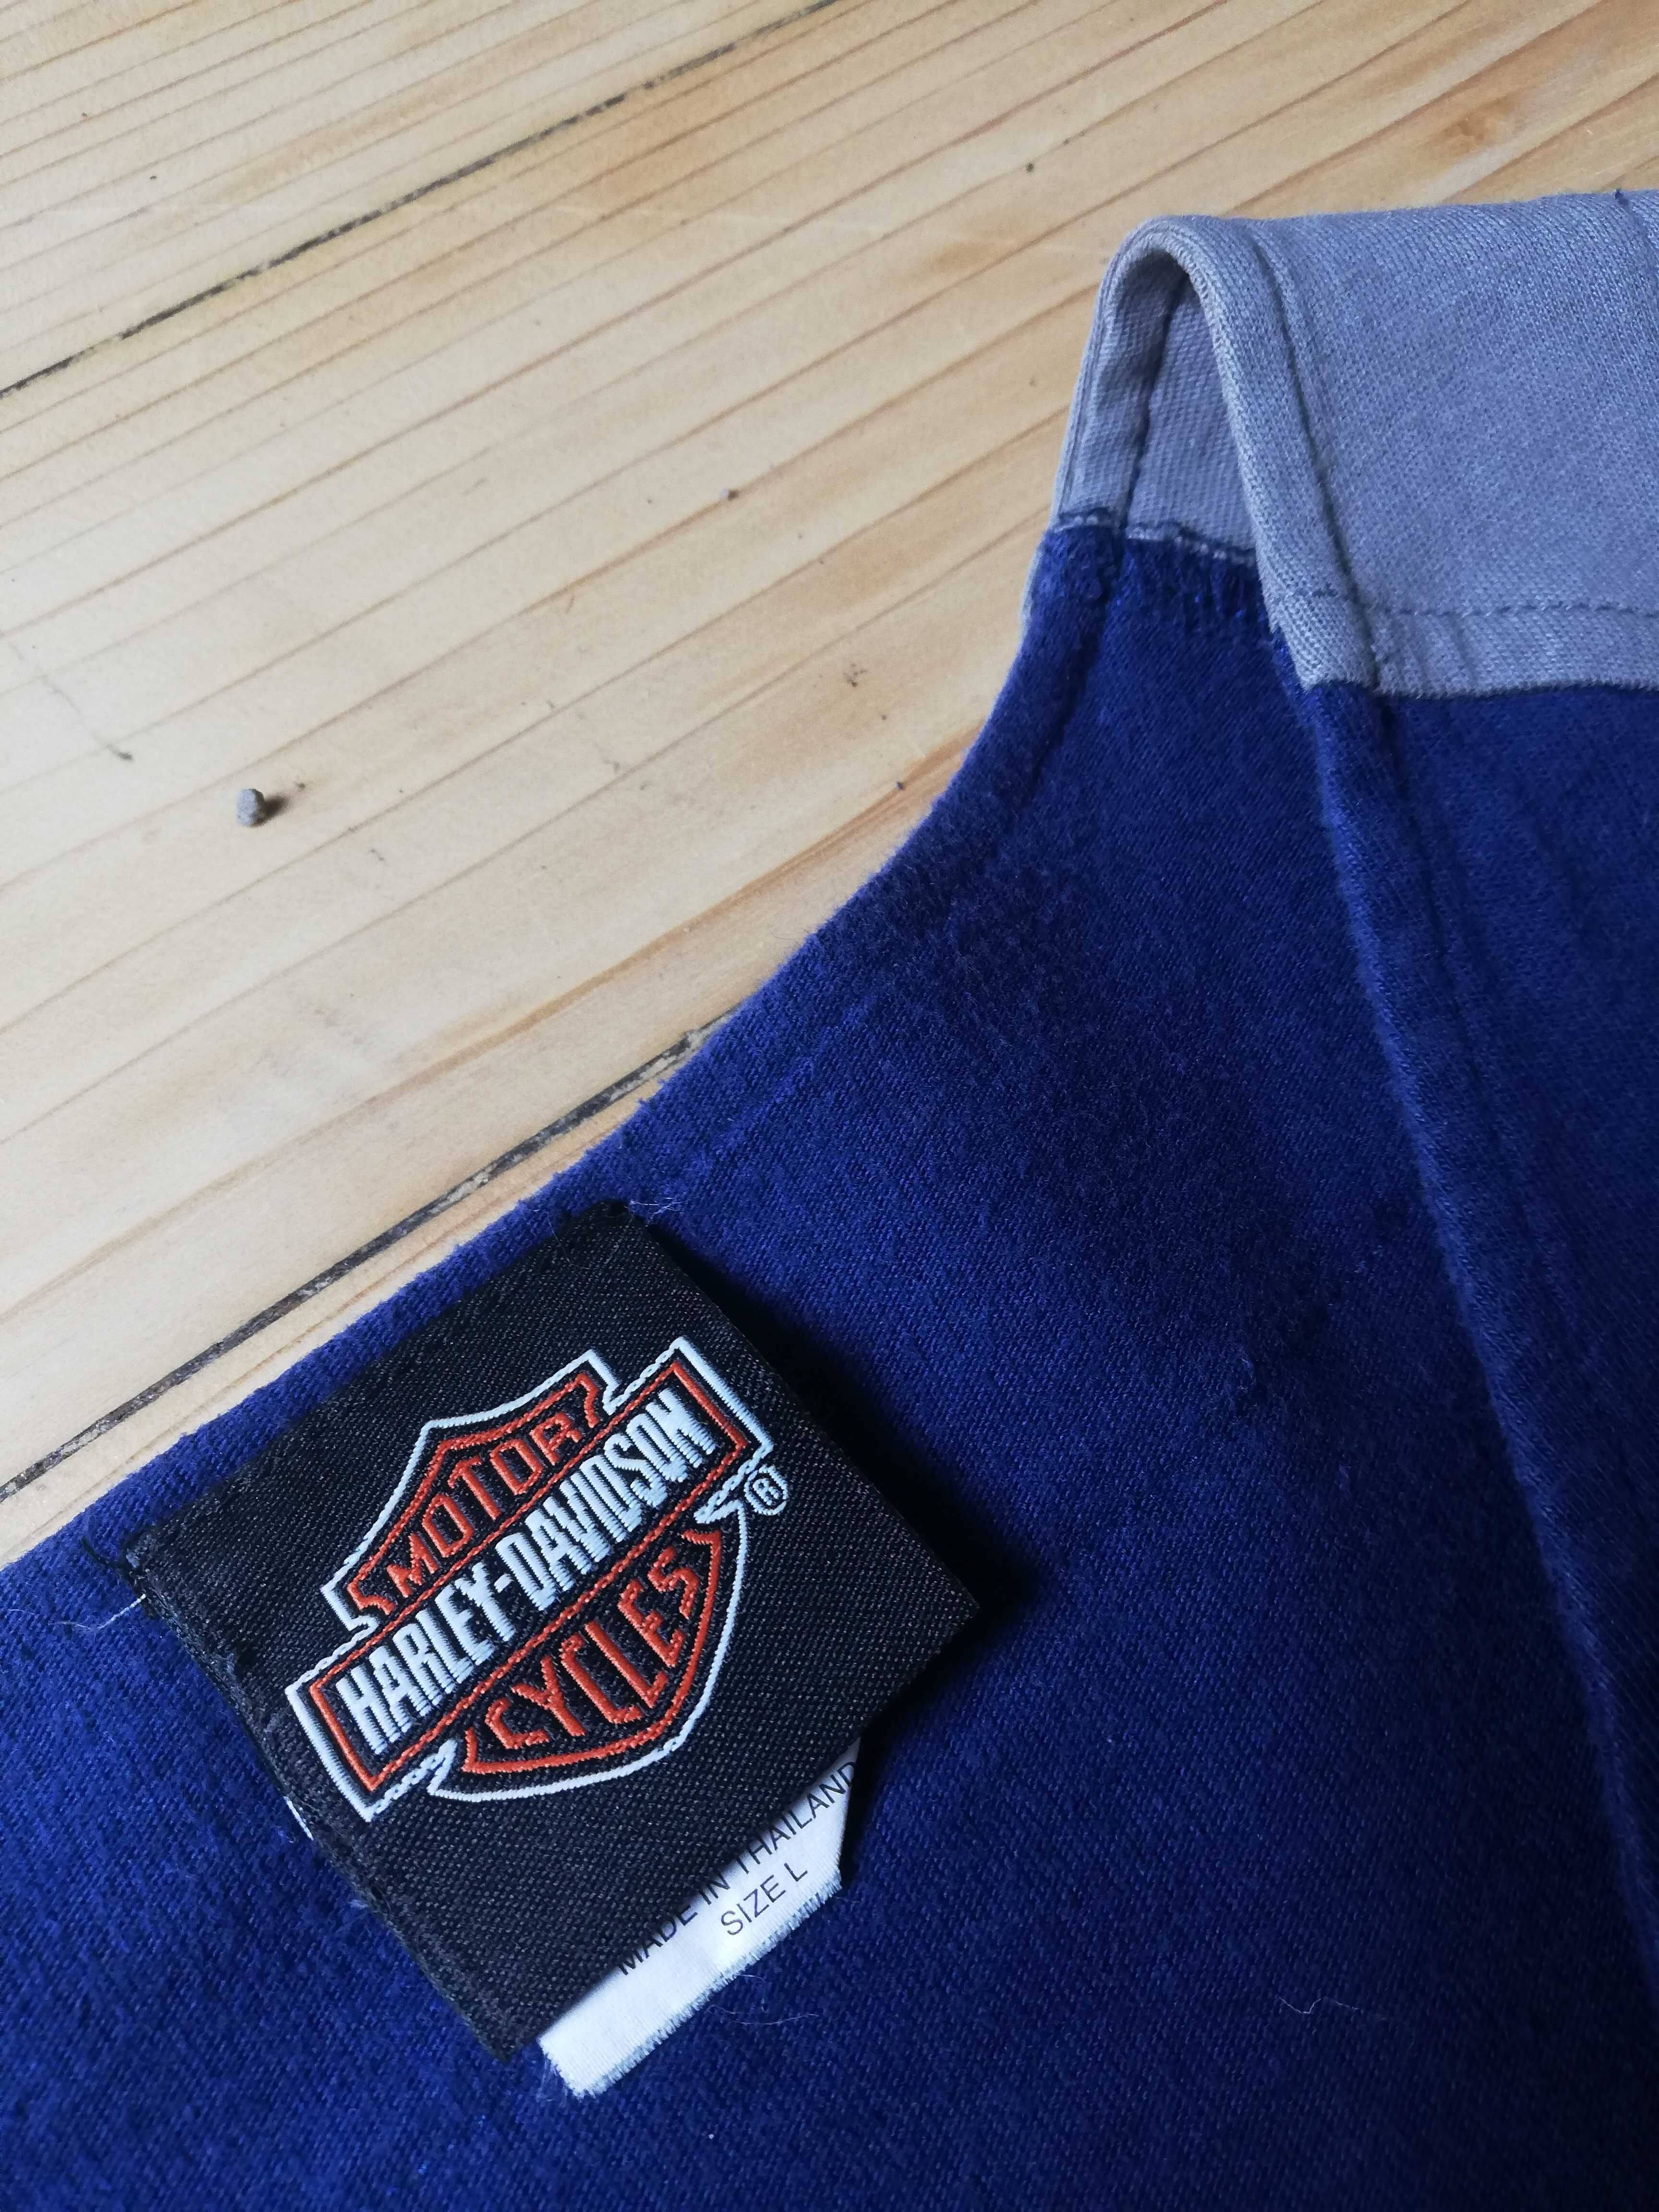 Harley - Davidson - Baseball Jersey - Super Rare Edition - Size L